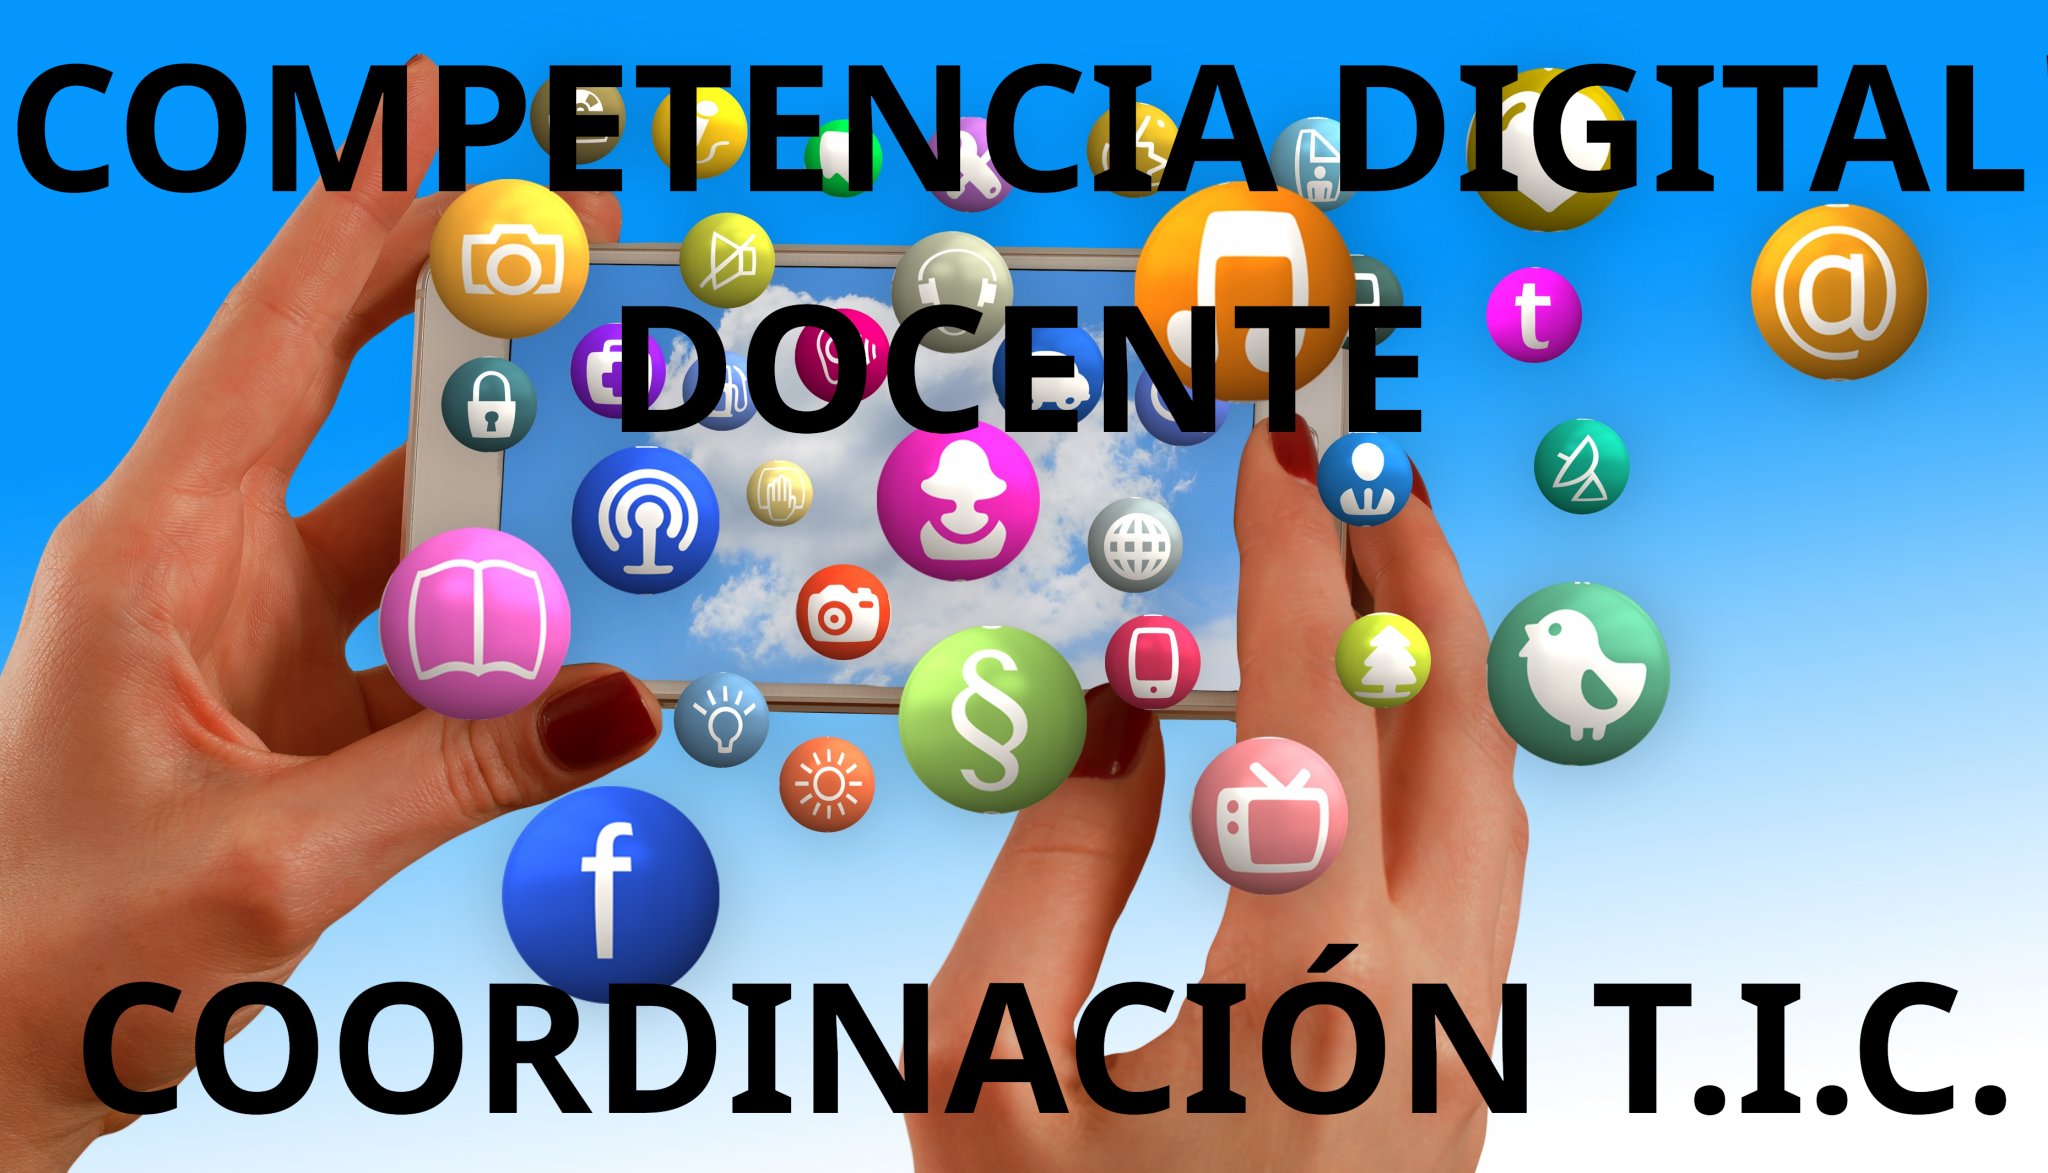 Competencia Digital Docente - Coordinación TIC